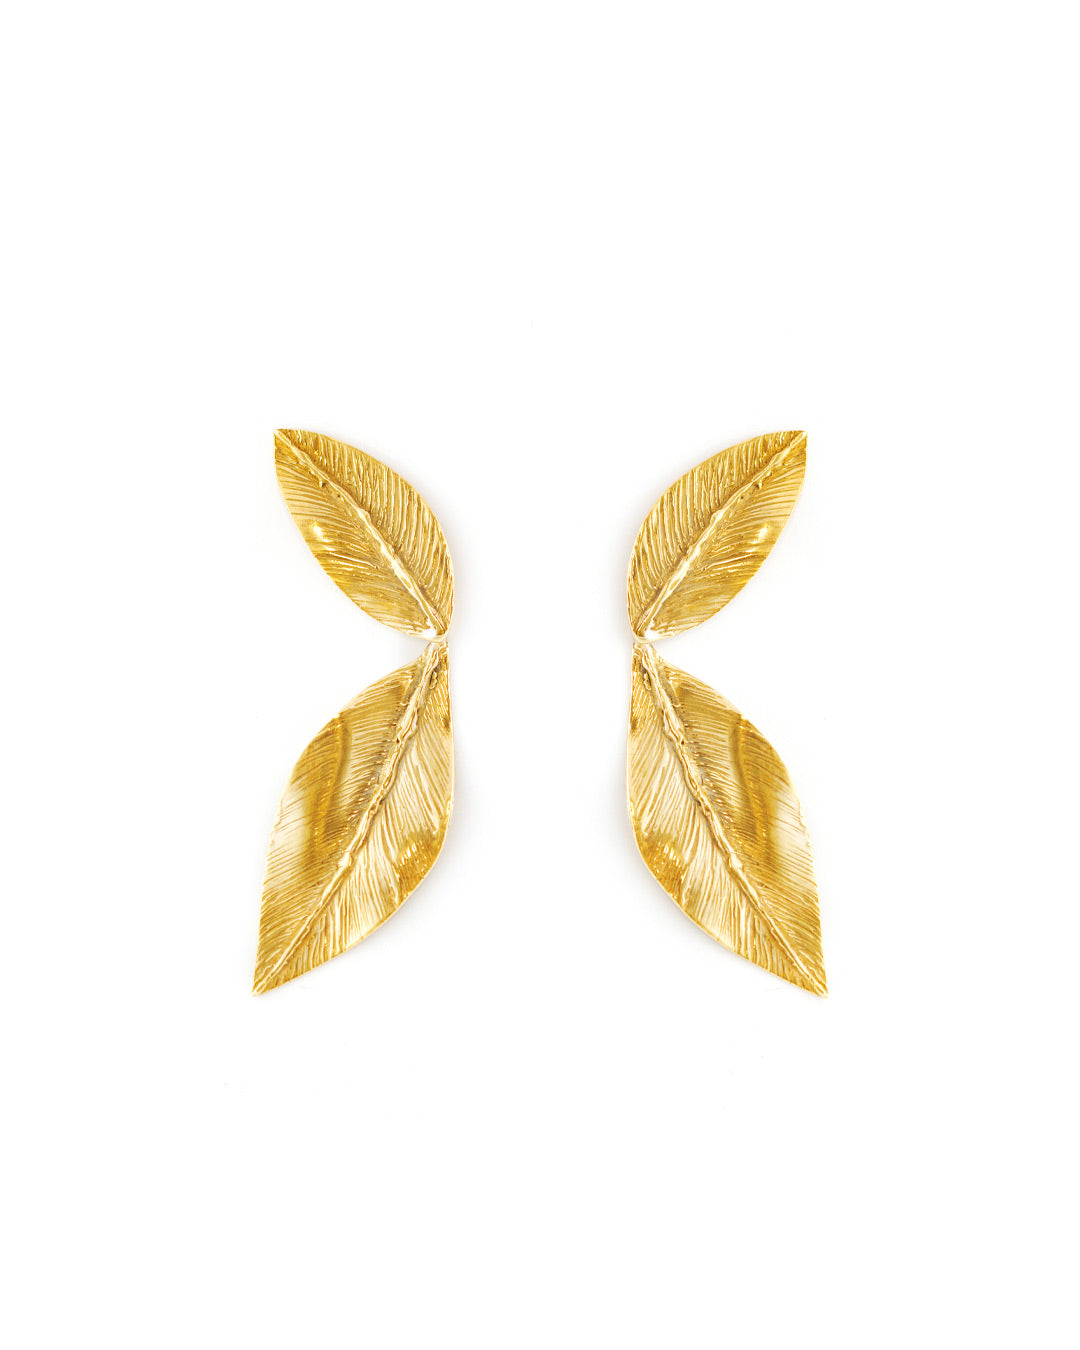 Handmade leaves earrings - Giulia Barela